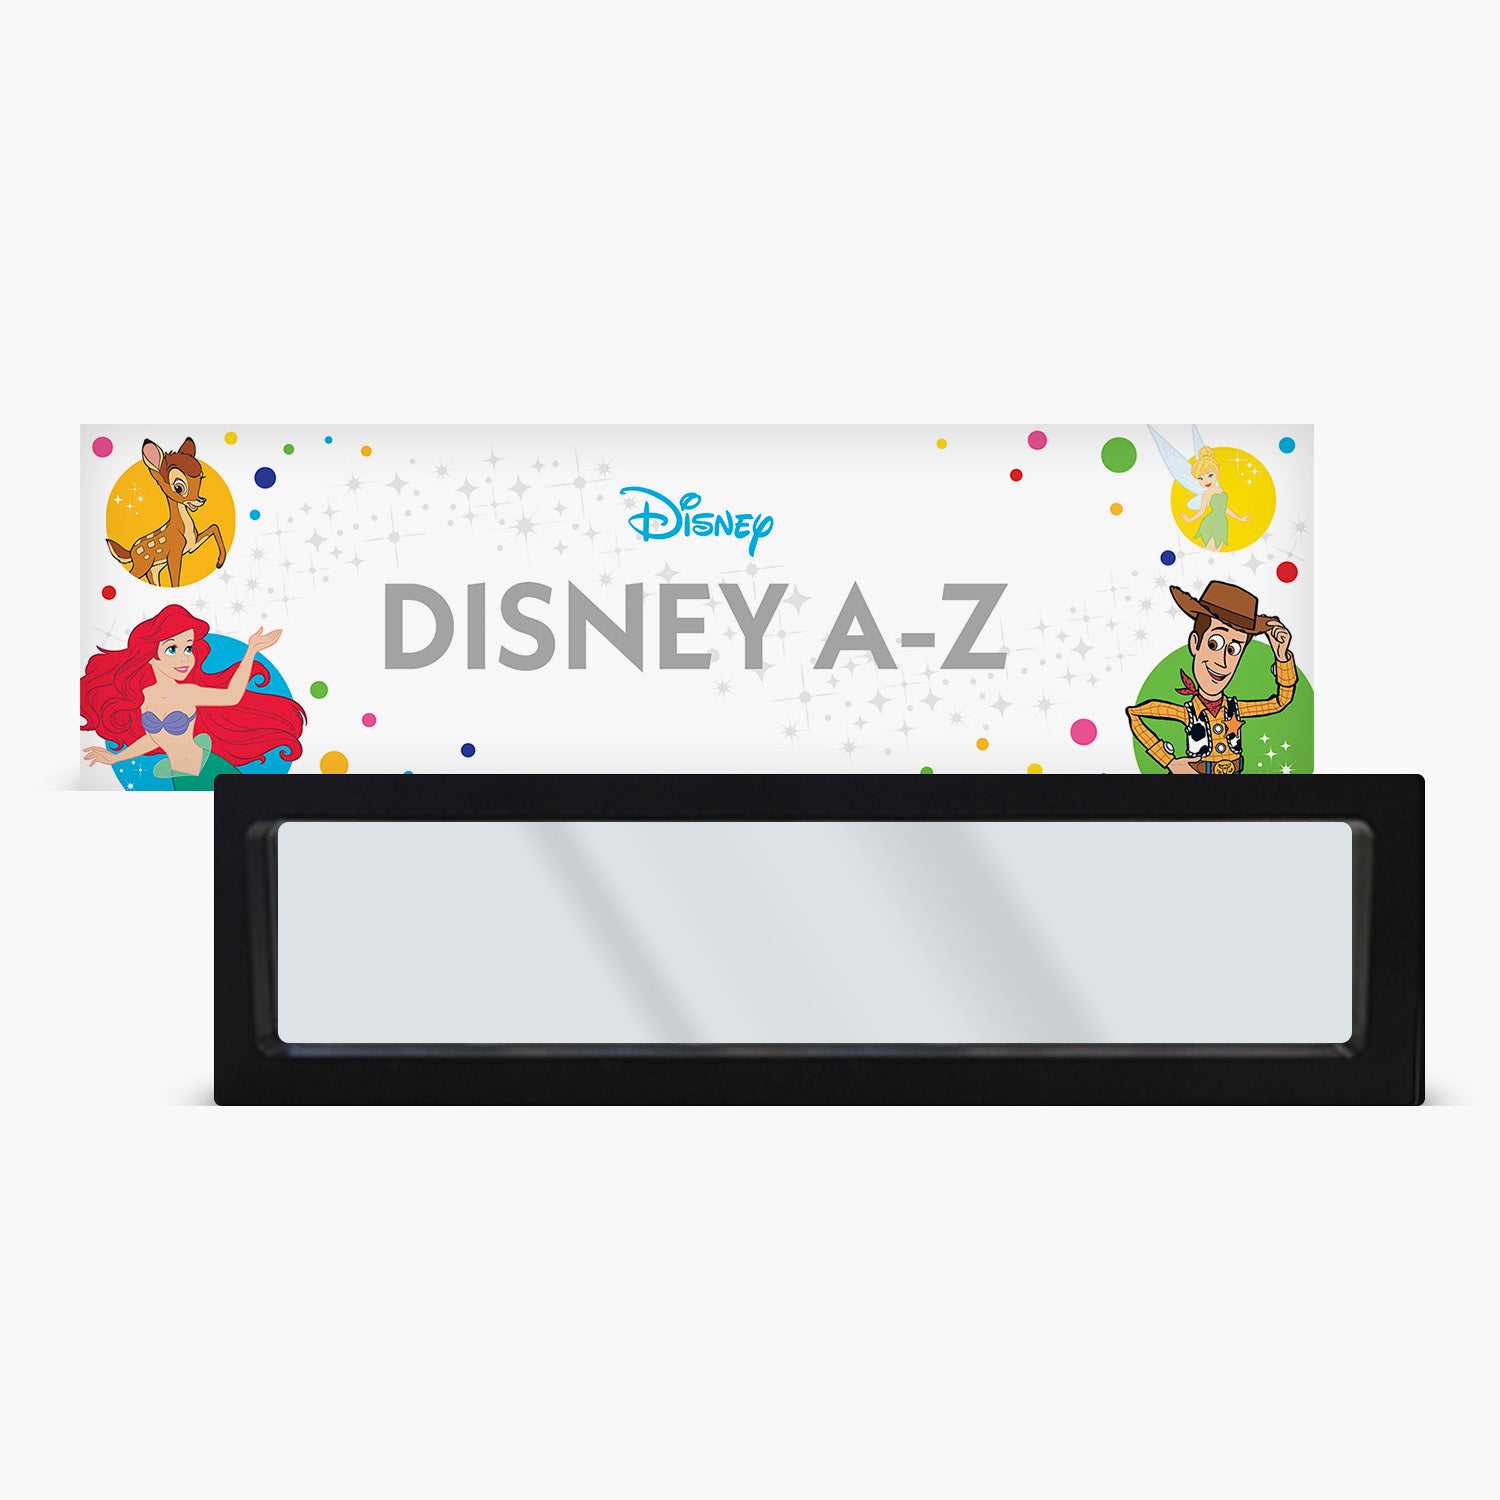 Disney A-Z Large Frame